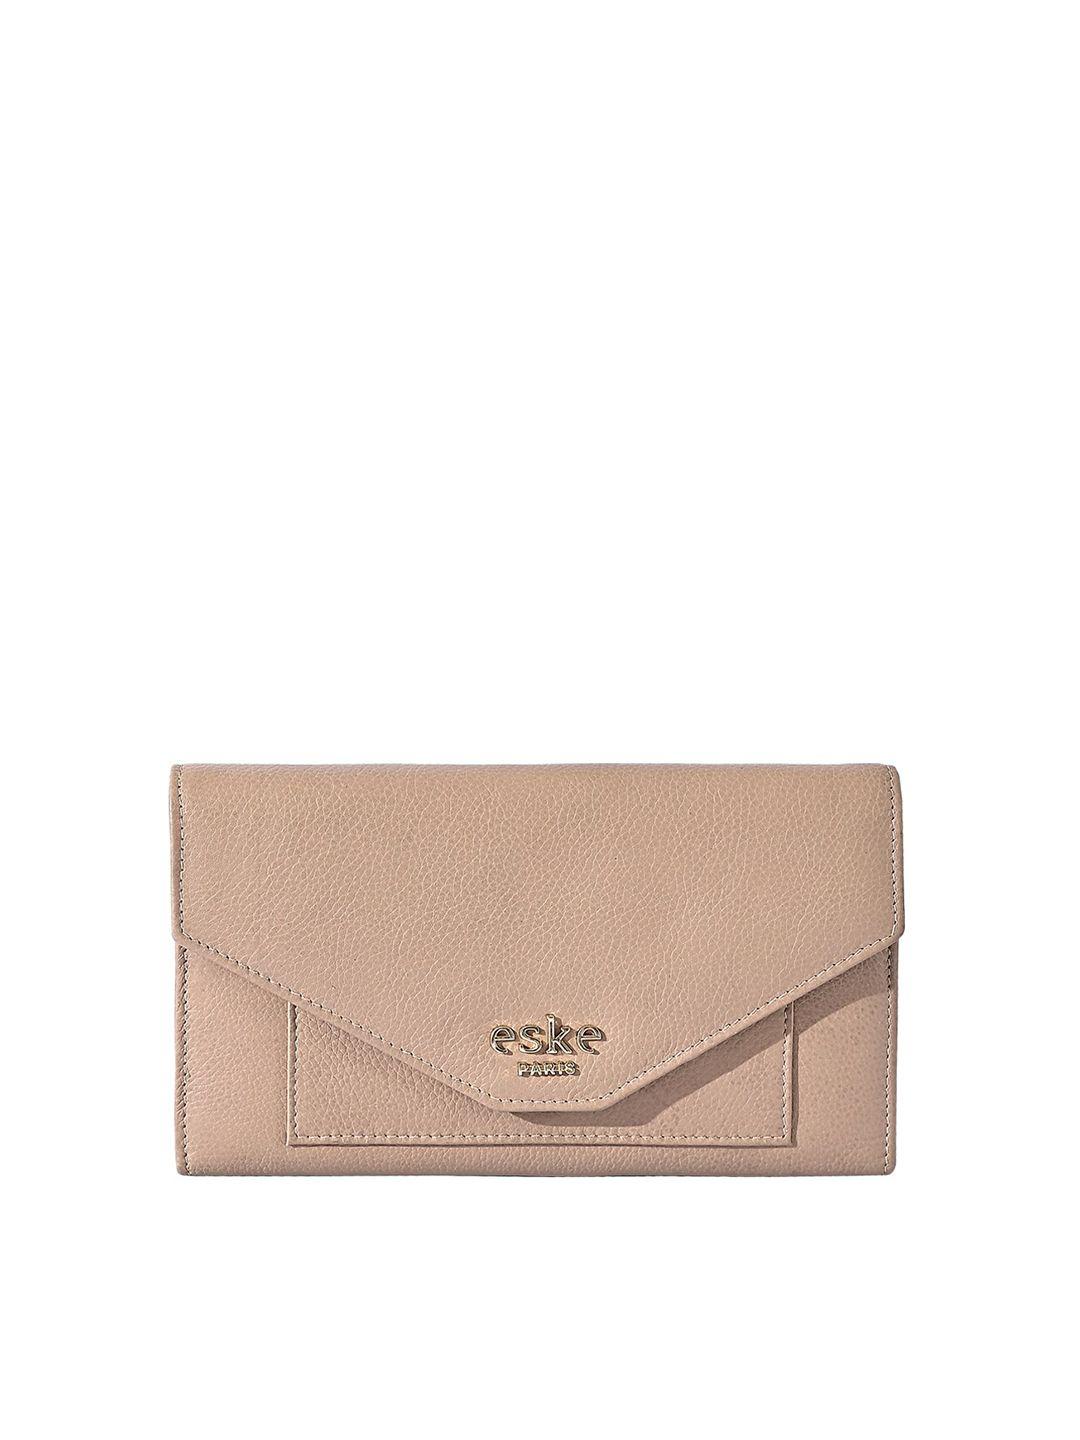 eske women beige leather three fold wallet